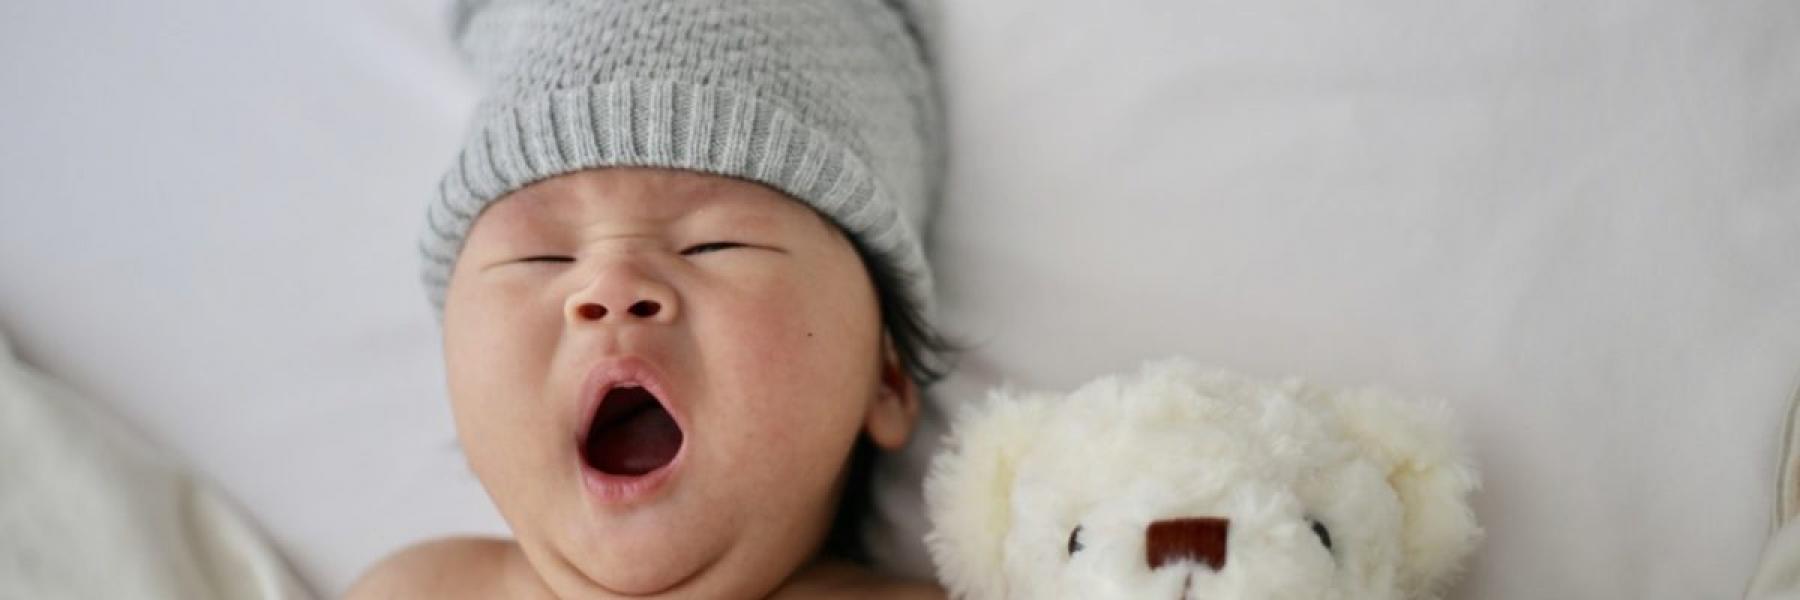 5 نصائح لمساعدة طفلك على النوم طوال الليل